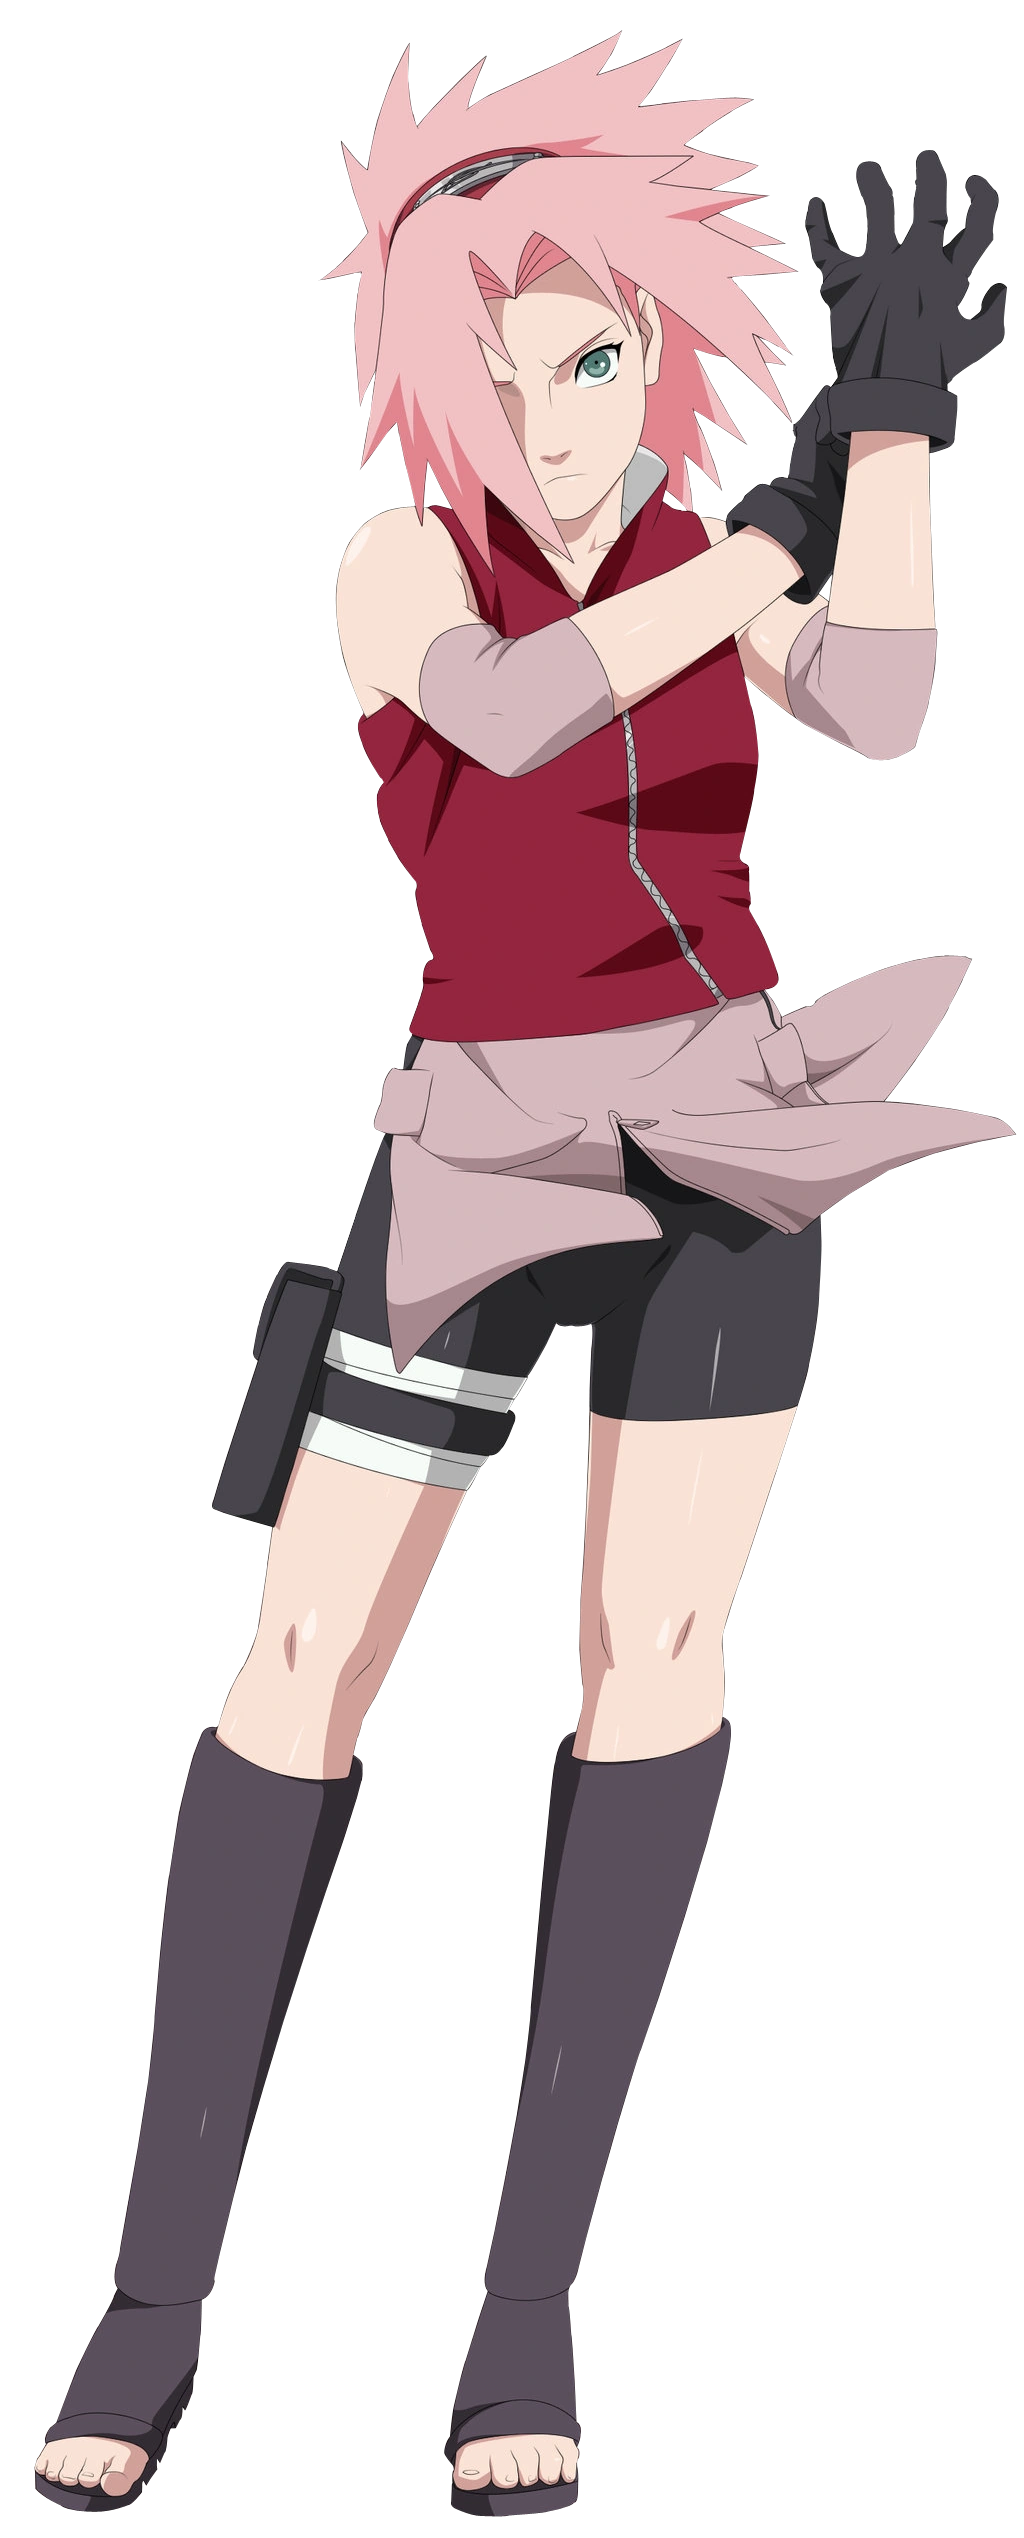 Sakura Haruno, Narutopedia